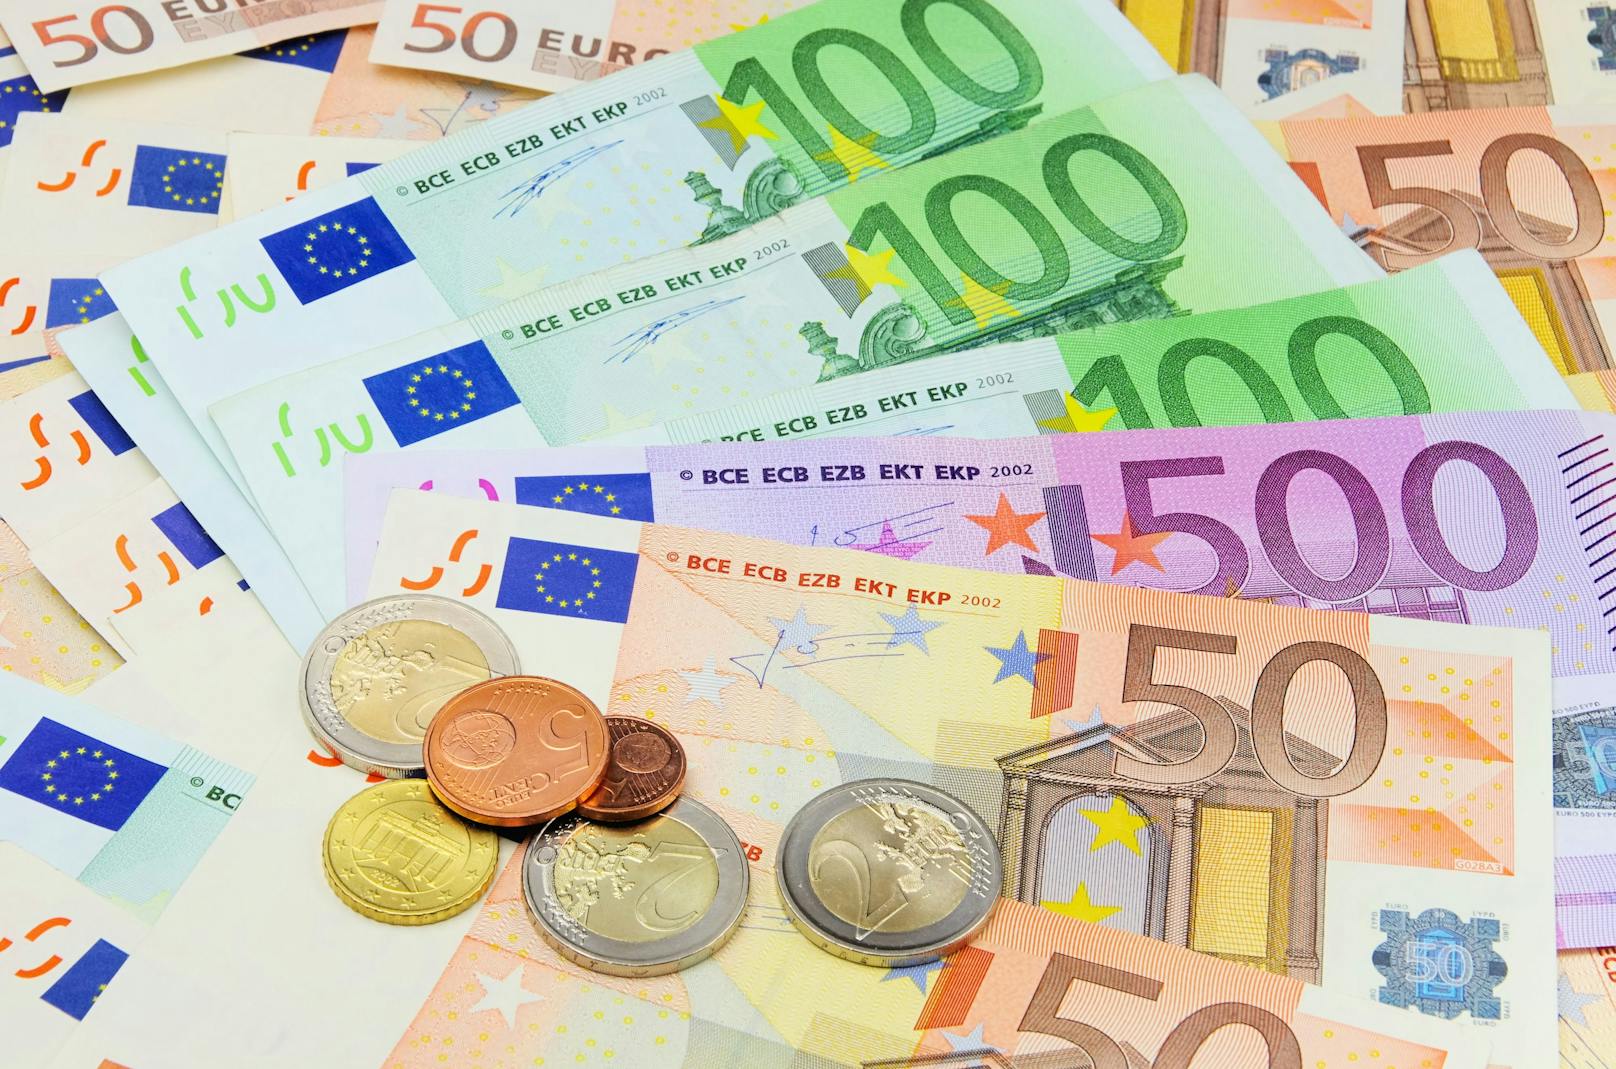 Rund eine Million Wiener erhalten nach Antrag 200 Euro aufs Konto.